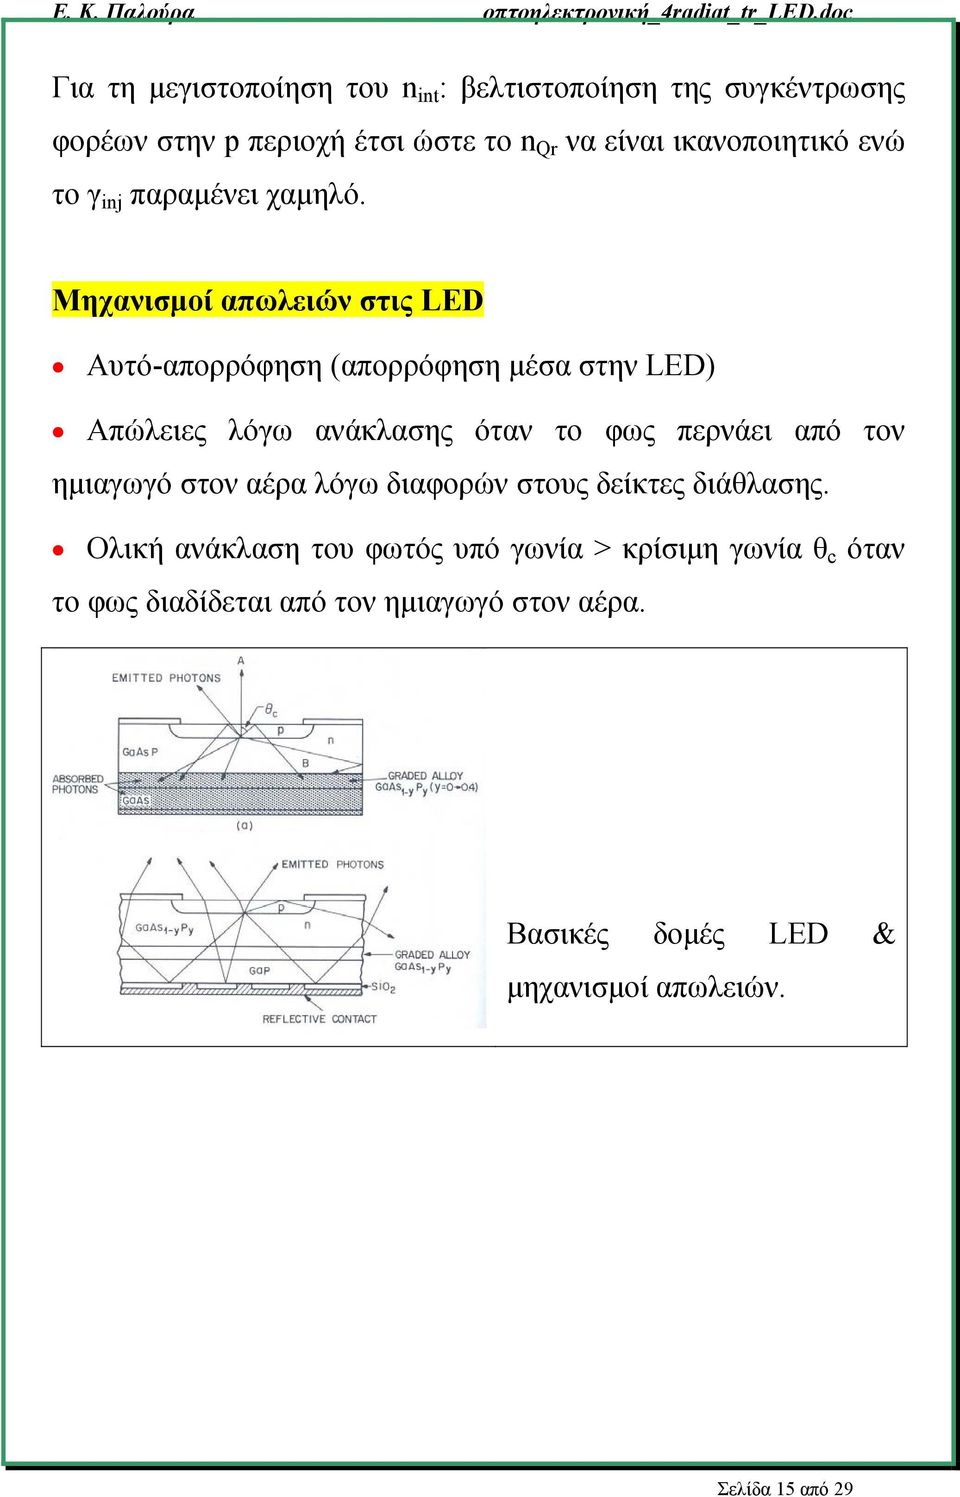 Μηχανισμοί απωλειών στις LED Αυτό-απορρόφηση (απορρόφηση μέσα στην LED) Απώλειες λόγω ανάκλασης όταν το φως περνάει από τον